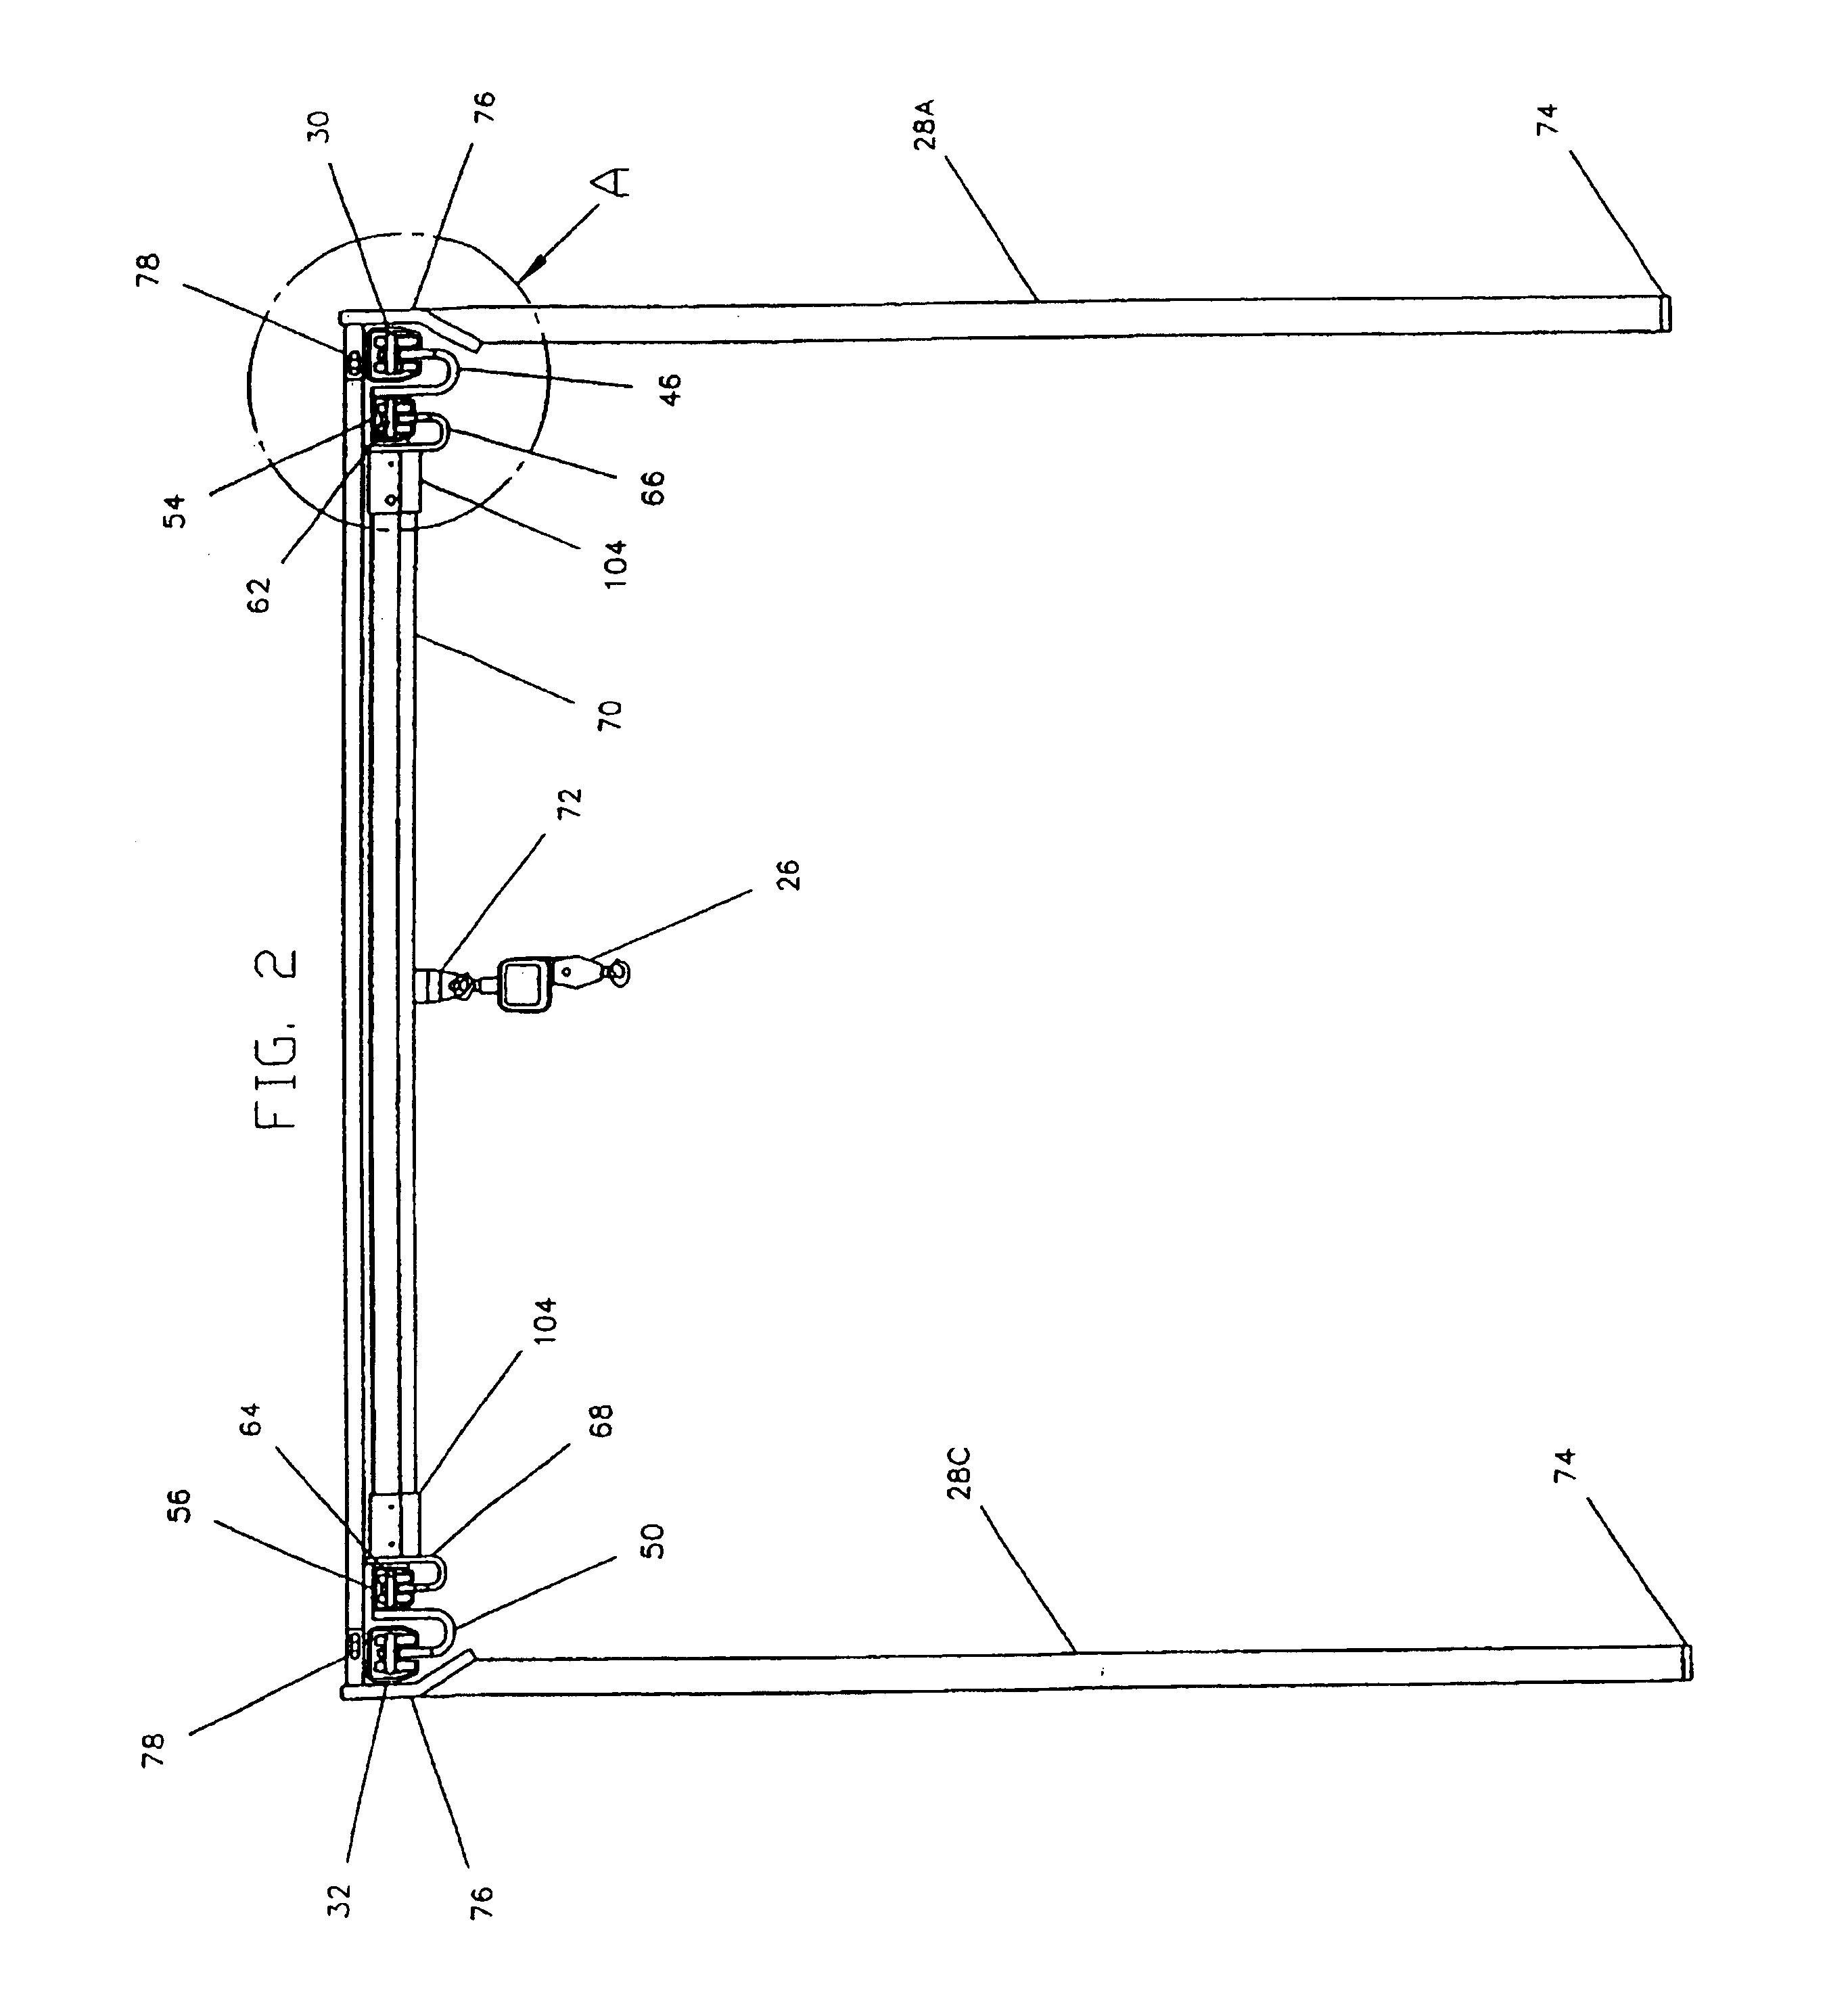 Low headroom telescoping bridge crane system